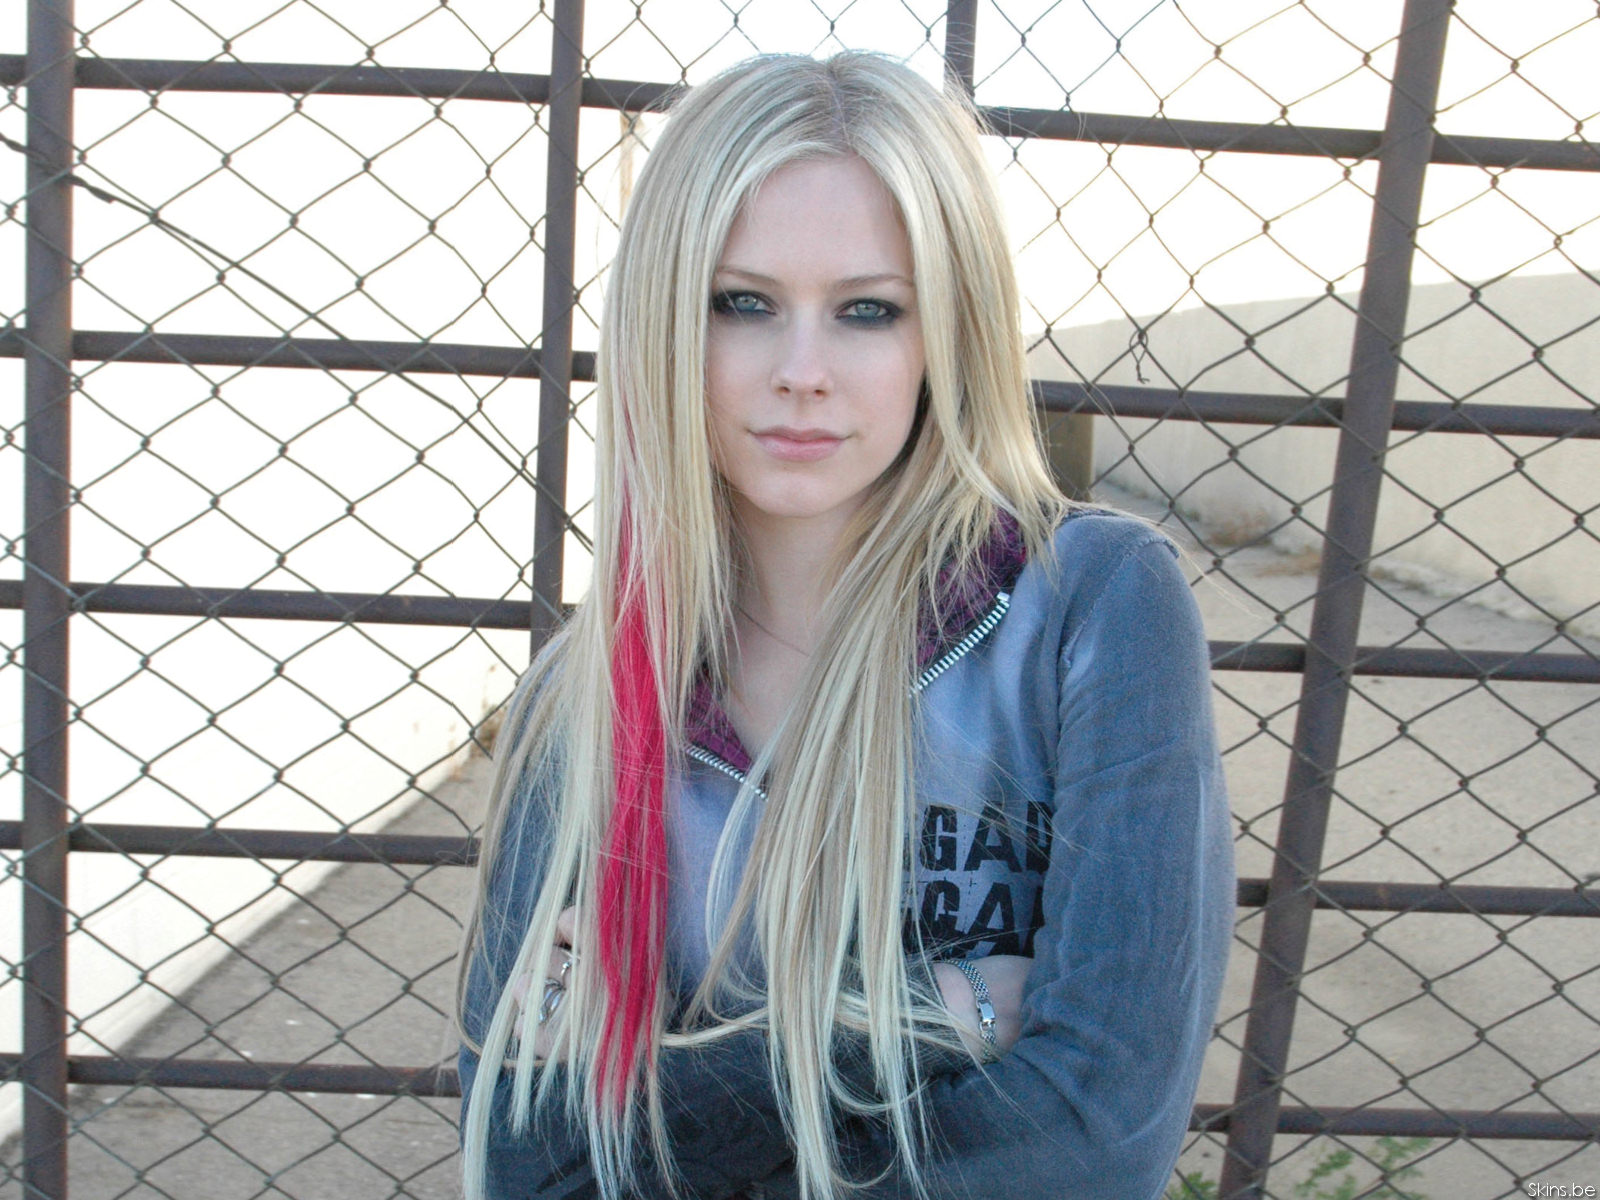 Download HQ Avril Lavigne wallpaper / Celebrities Female / 1600x1200